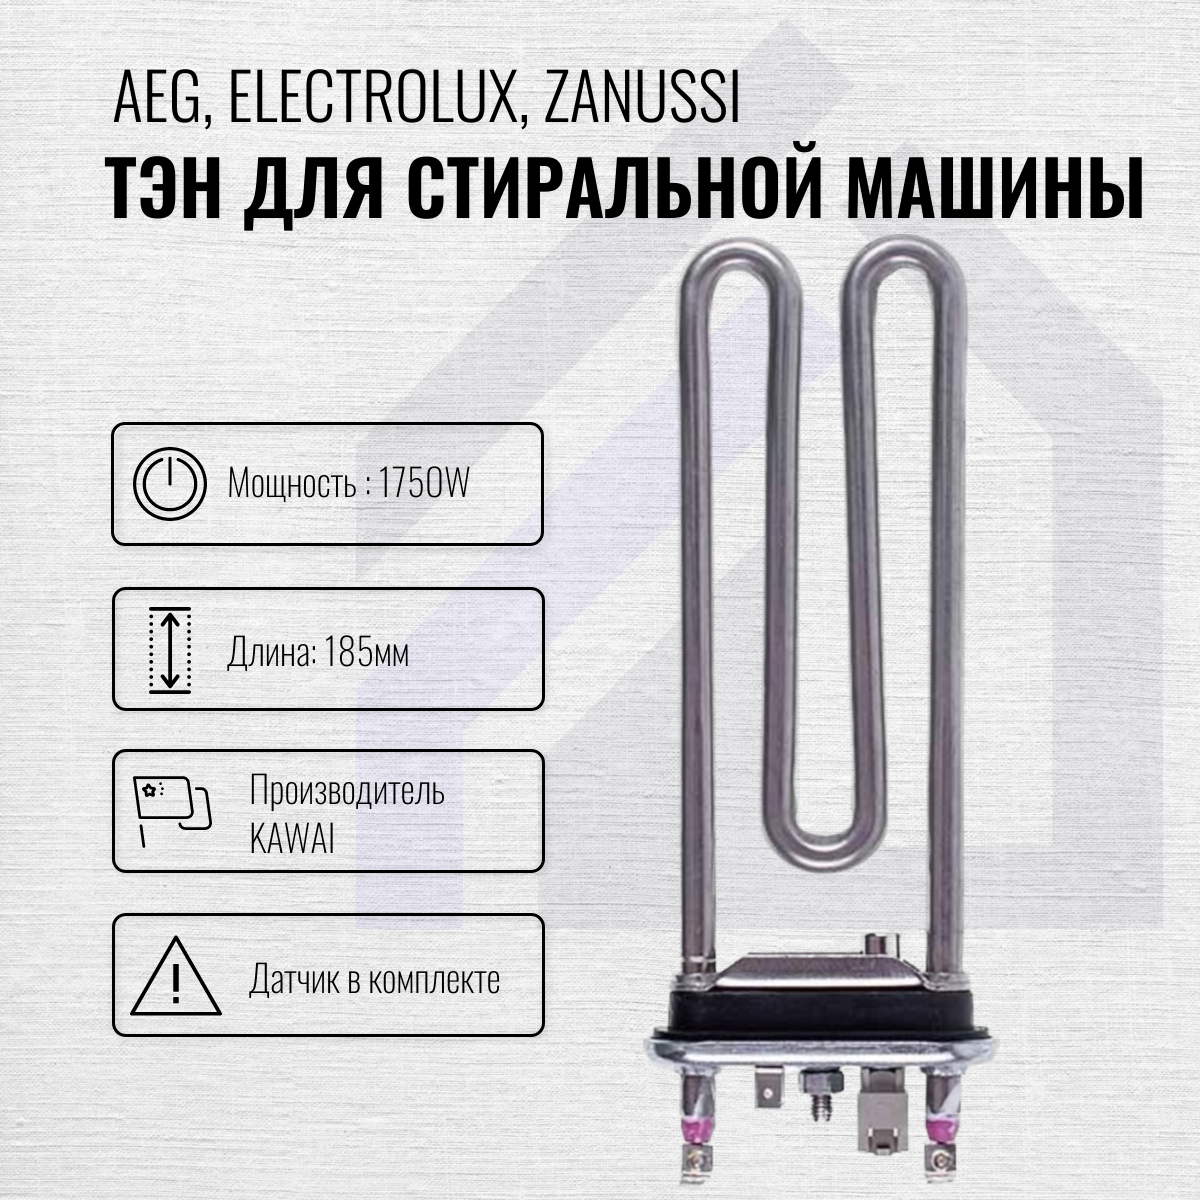 ТЭН 1750W для стиральной машины Aeg, Electrolux, Zanussi с датчиком